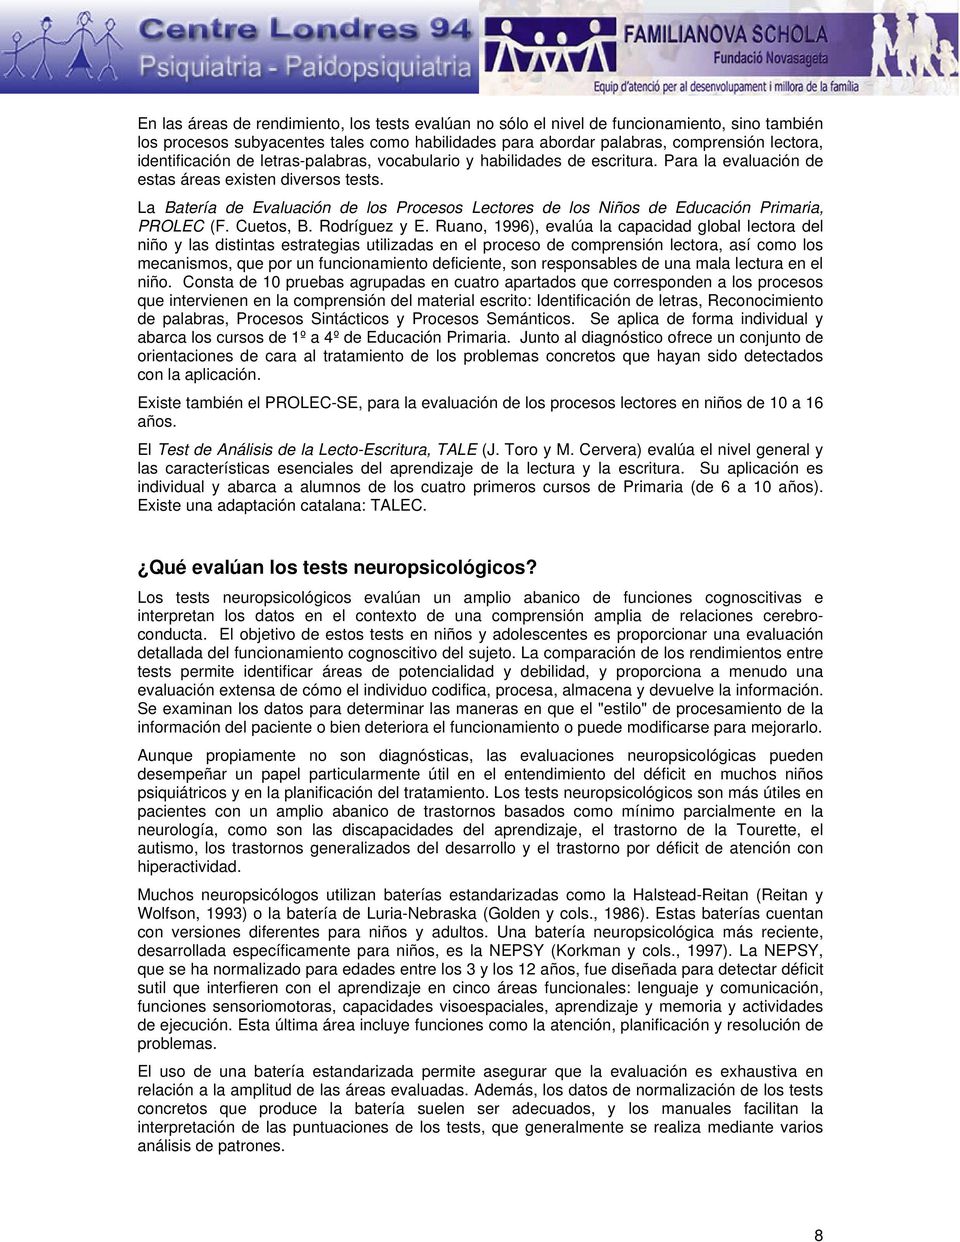 La Batería de Evaluación de los Procesos Lectores de los Niños de Educación Primaria, PROLEC (F. Cuetos, B. Rodríguez y E.